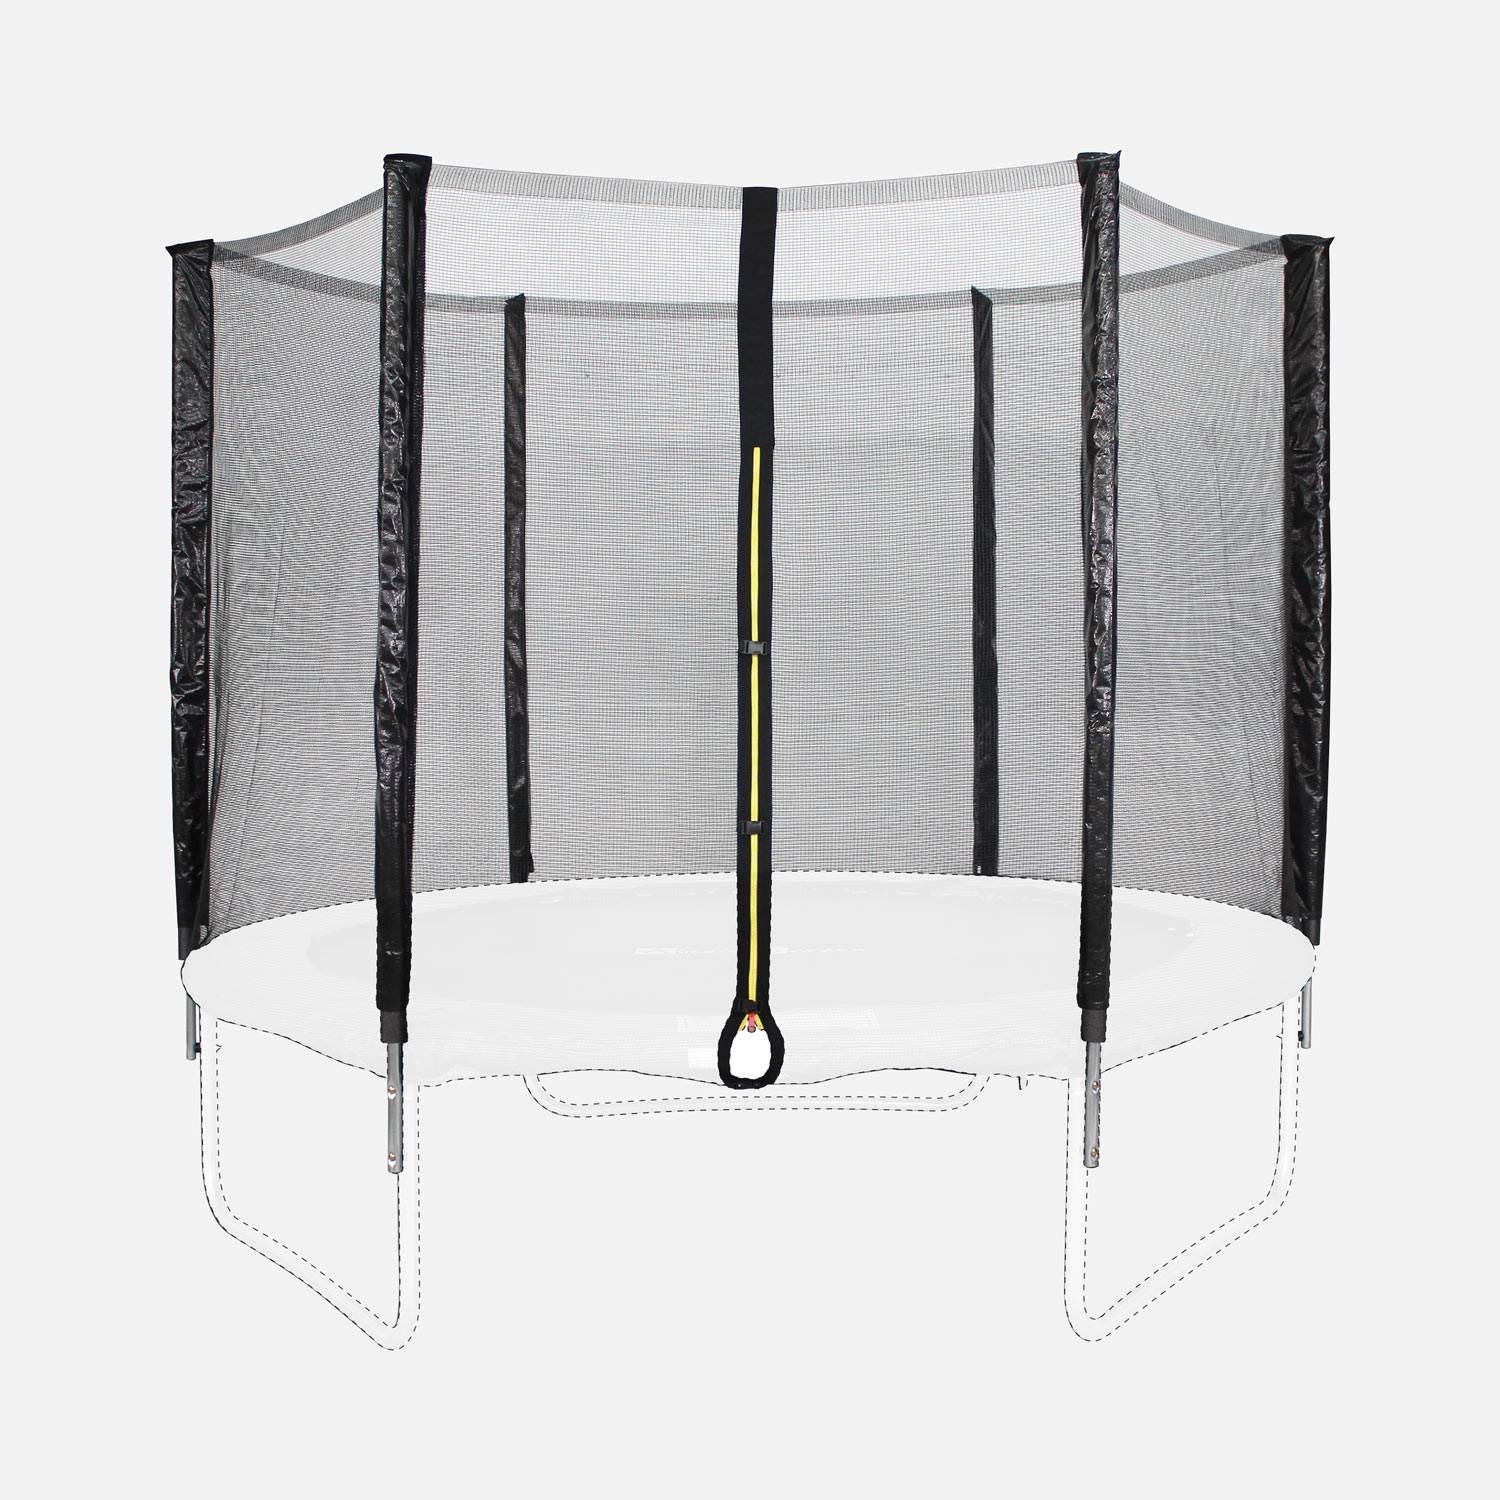 Kit de substituição da rede de proteção do trampolim, ANTARES EXTERIORES, para o trampolim Pluton Ø250cm Photo2